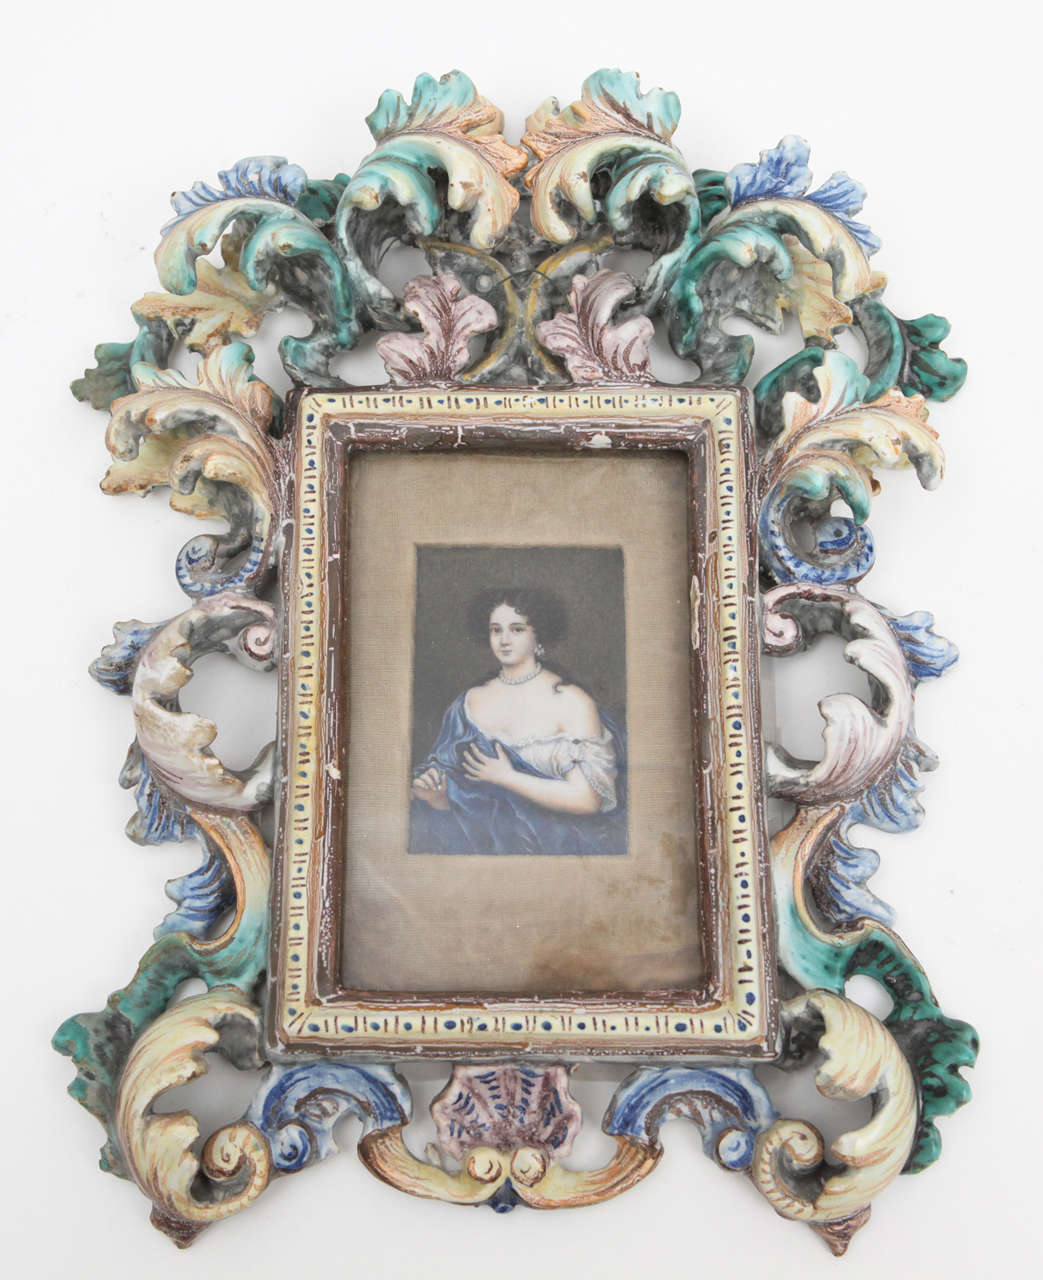 Der sehr ungewöhnliche Fayence-Rahmen mit Herstellermarke enthält das fein detaillierte Porträt einer für die damalige Zeit bedeutenden Frau. Die Informationen sind auf der Rückseite aufgeführt (siehe Fotos).